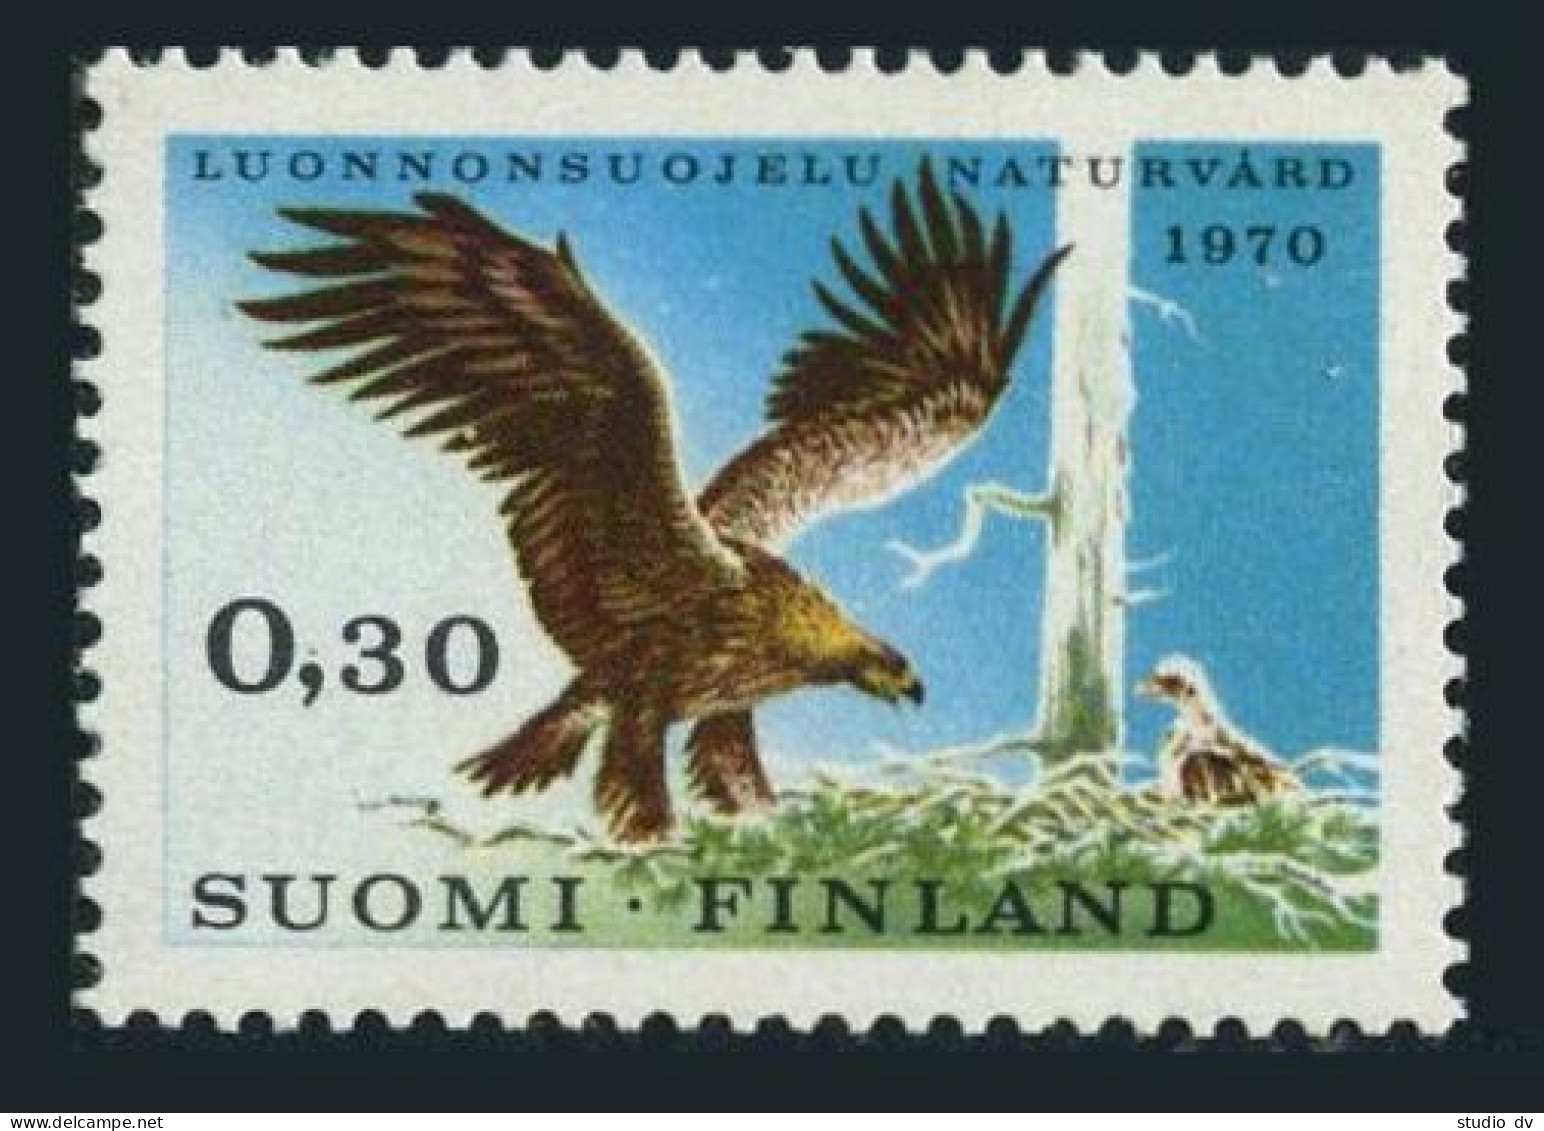 Finland 490, MNH. Michel 667. Nature Conservation 1970. Golden Eagle. - Ungebraucht